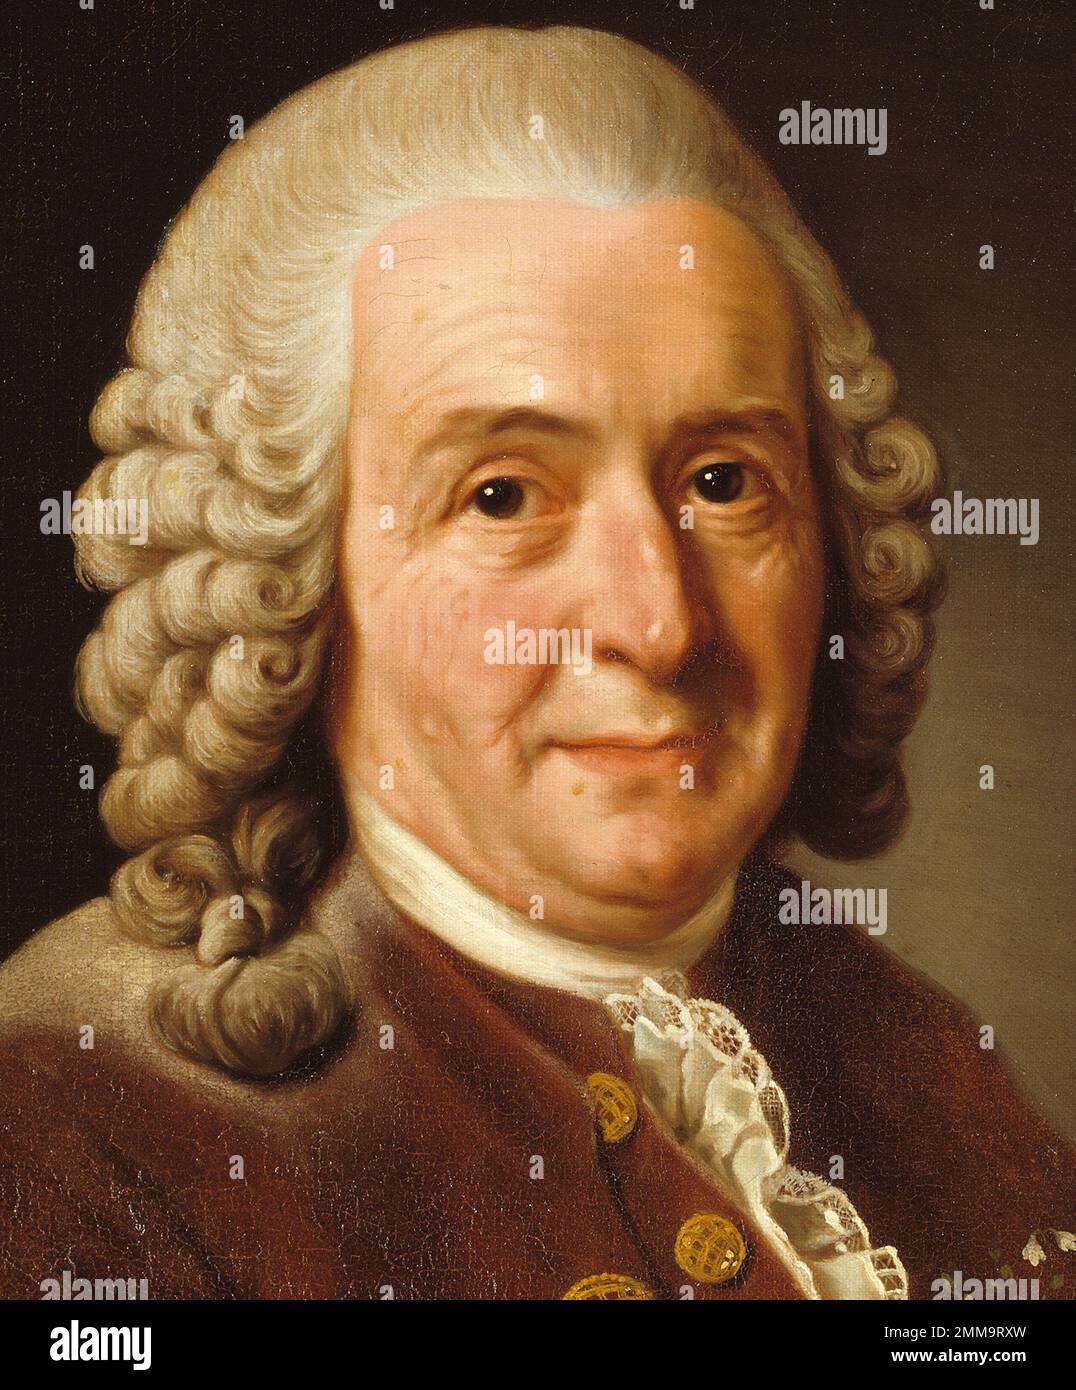 Carl Linnaeus (1707-1778), auch bekannt als Carl von Linné, schwedischer Botaniker, Zoologe, Taxonomist und Arzt, der die binomiale Nomenklatur formalisierte, das moderne System der Benennung von Organismen. Er ist als „Vater der modernen Taxonomie“ bekannt. Stockfoto